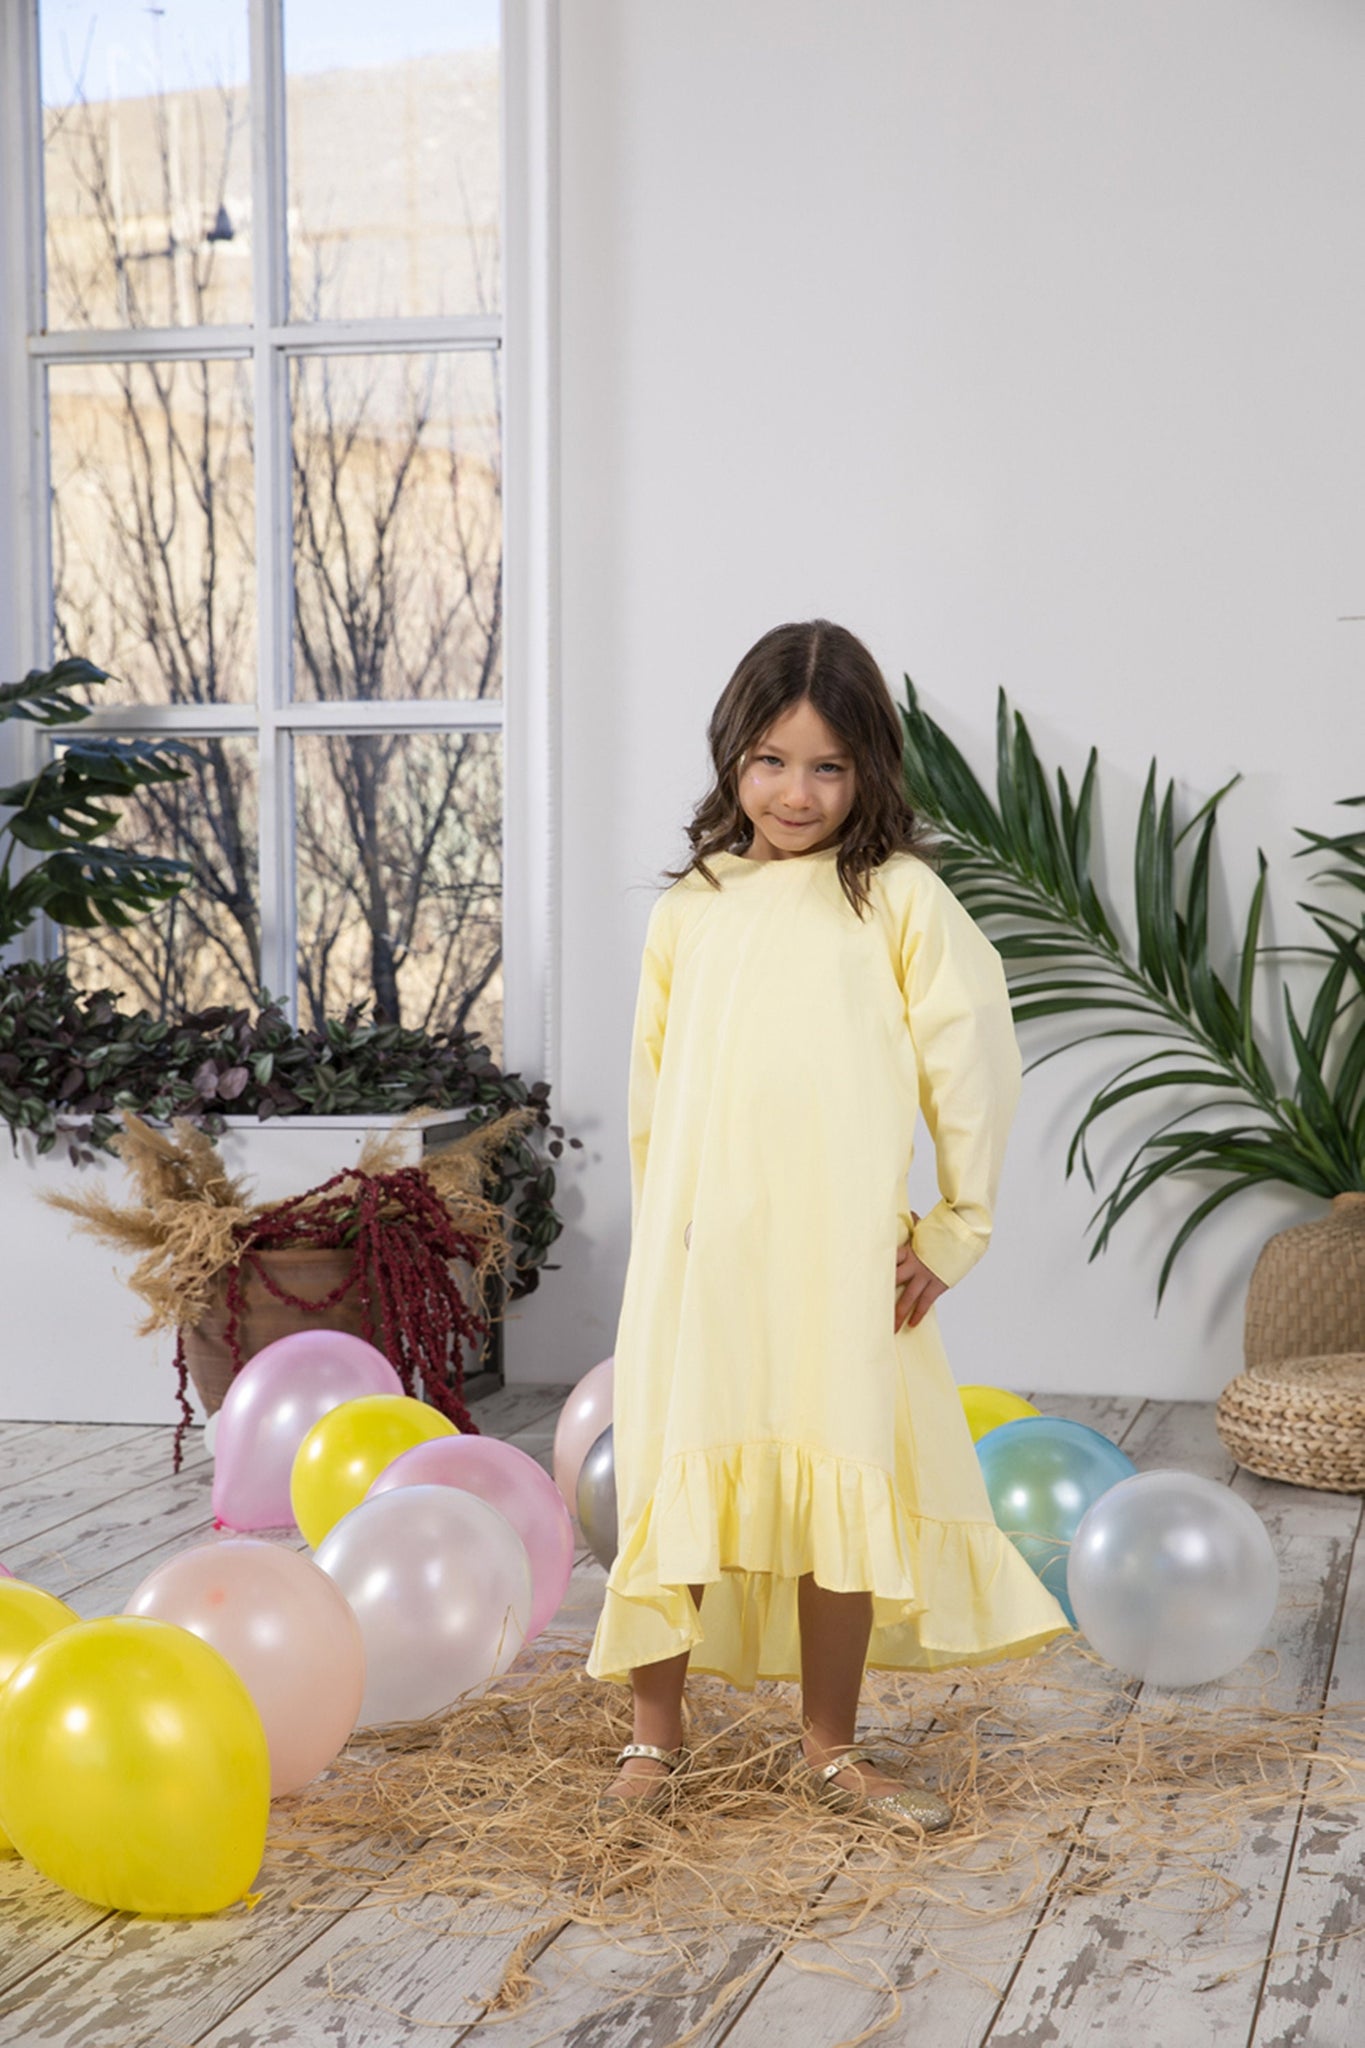 0-6 साल की उम्र के बच्चों के लिए कपड़े, बच्चा बच्चे बेबी गर्ल्स समर स्लिंग  शिफॉन स्कर्ट राजकुमारी ड्रेस स्लिंग ड्रेस : Amazon.in: कपड़े और ...